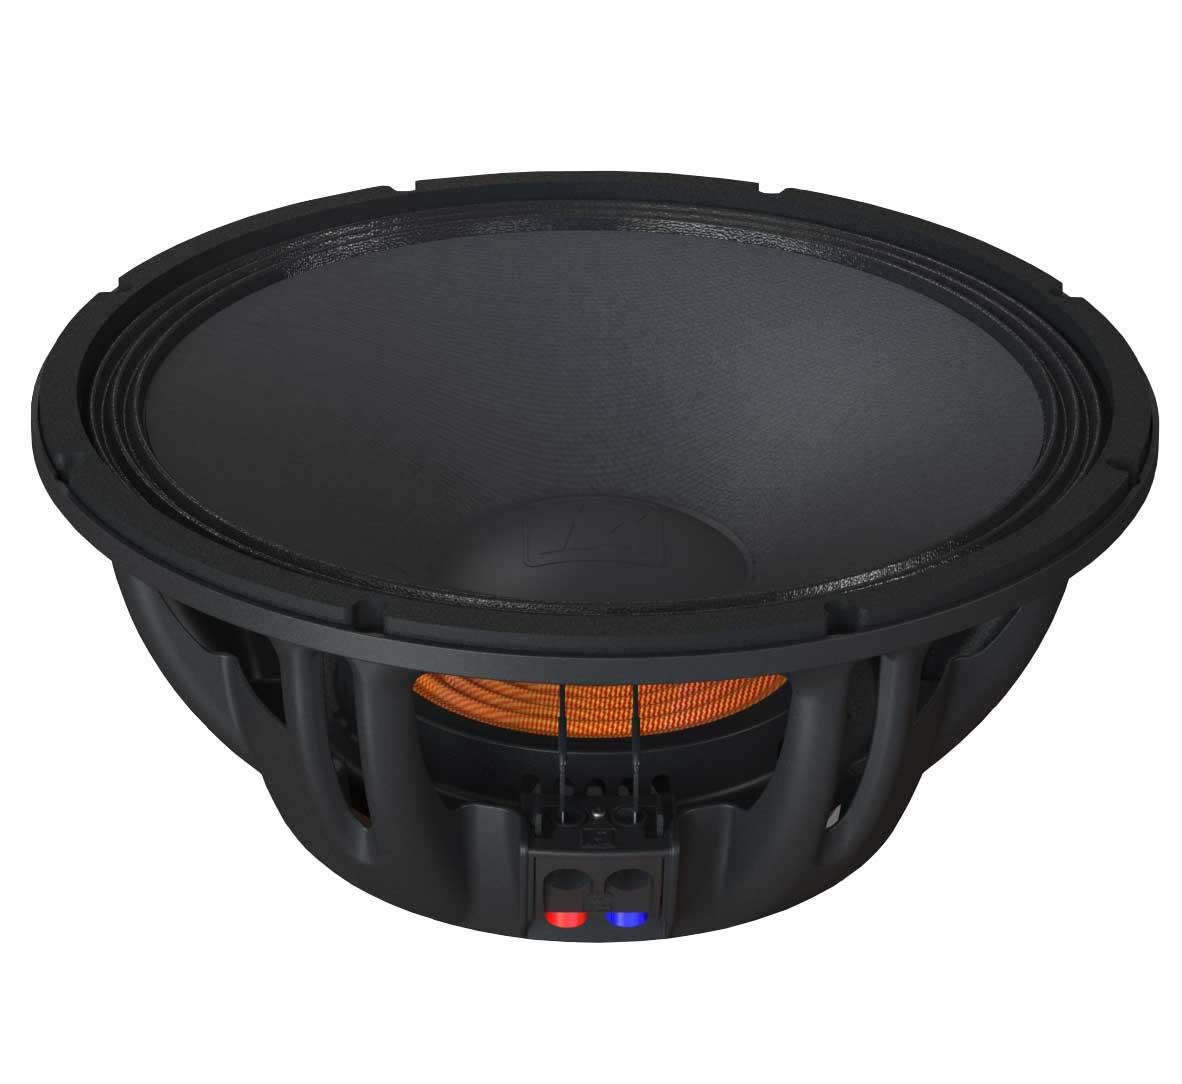 p audio 400 watt speaker price